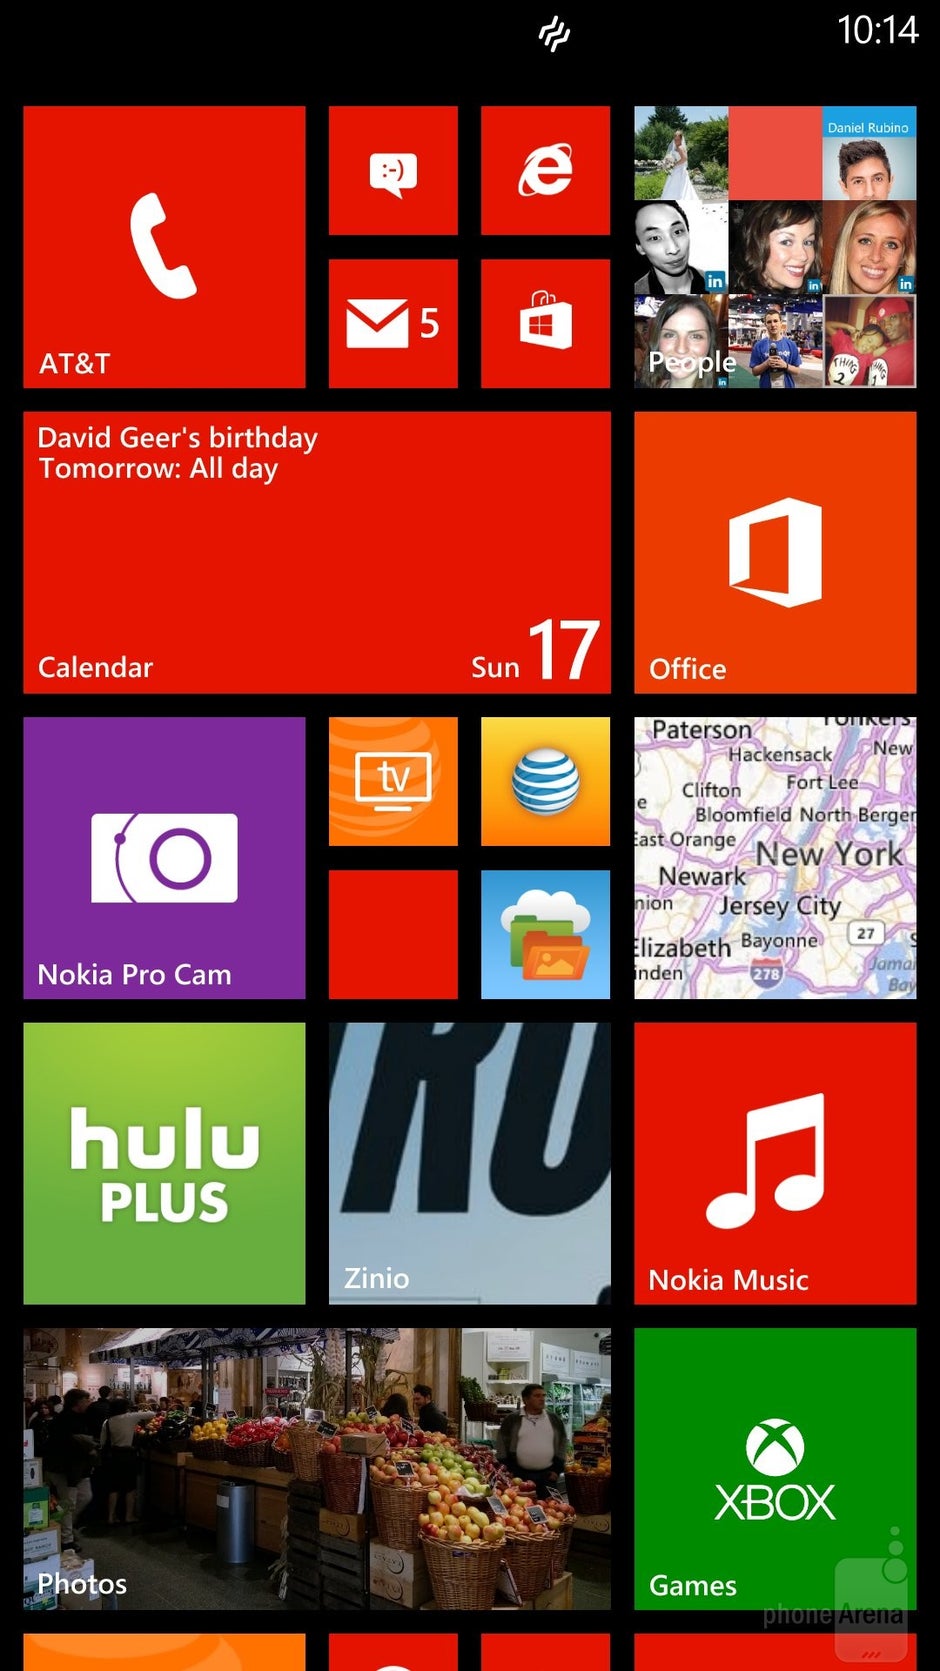 Interfaccia del Nokia Lumia 1520 - Samsung Galaxy Note 4 vs Nokia Lumia 1520